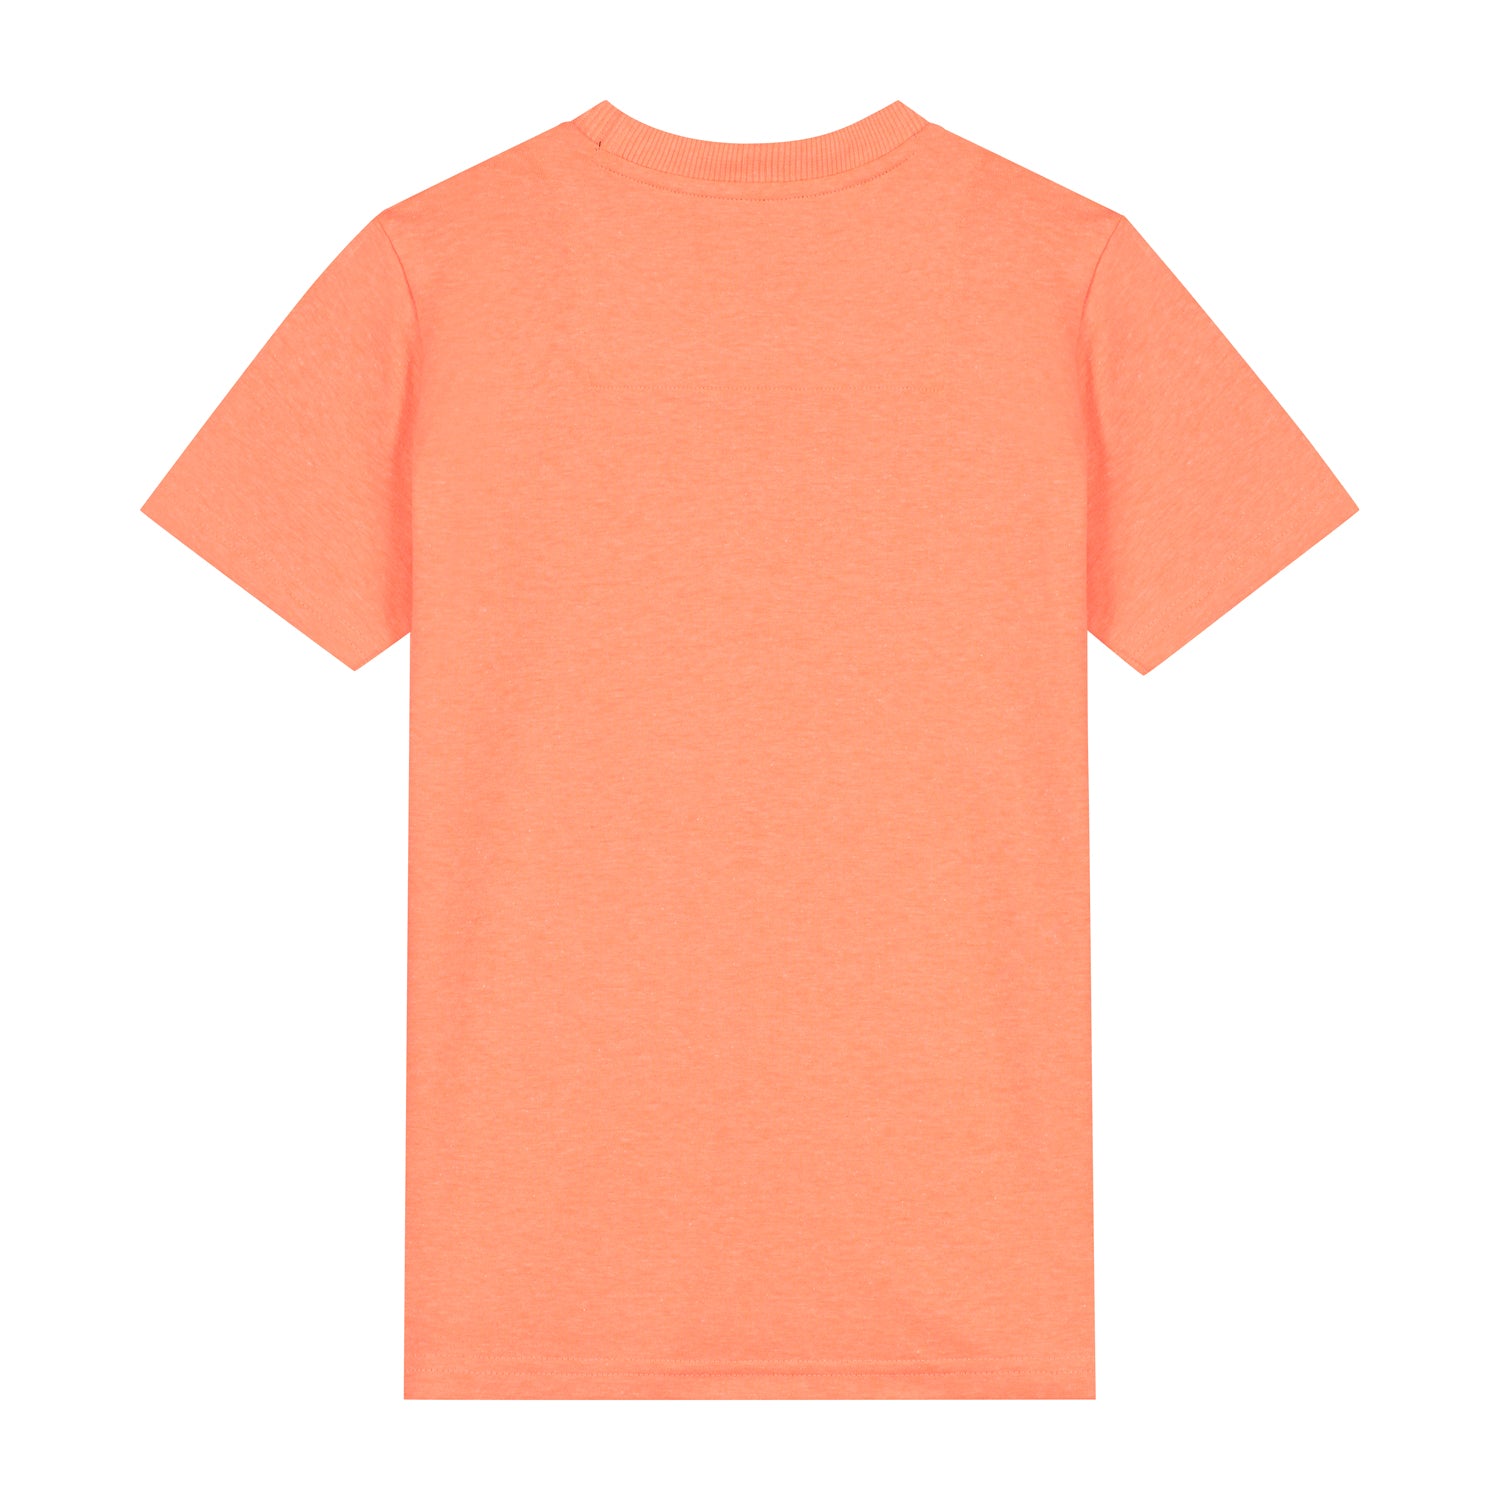 Skurk T-shirt Tasic Coral